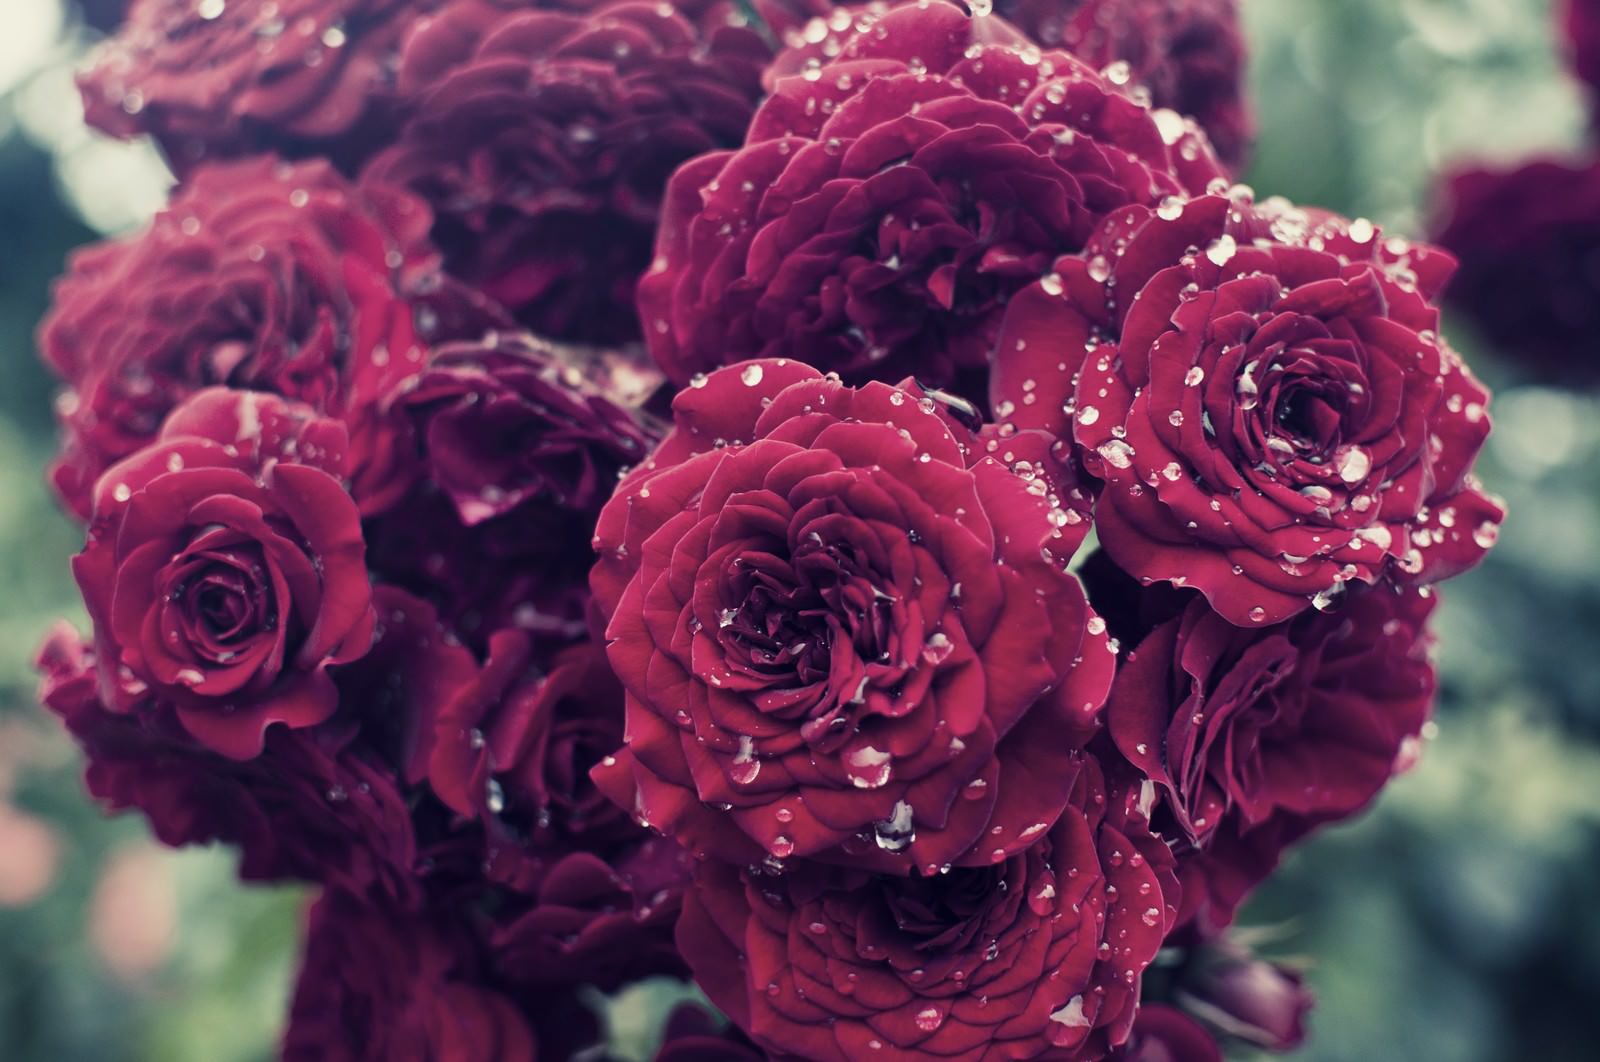 「雨に濡れる紅い薔薇」の写真